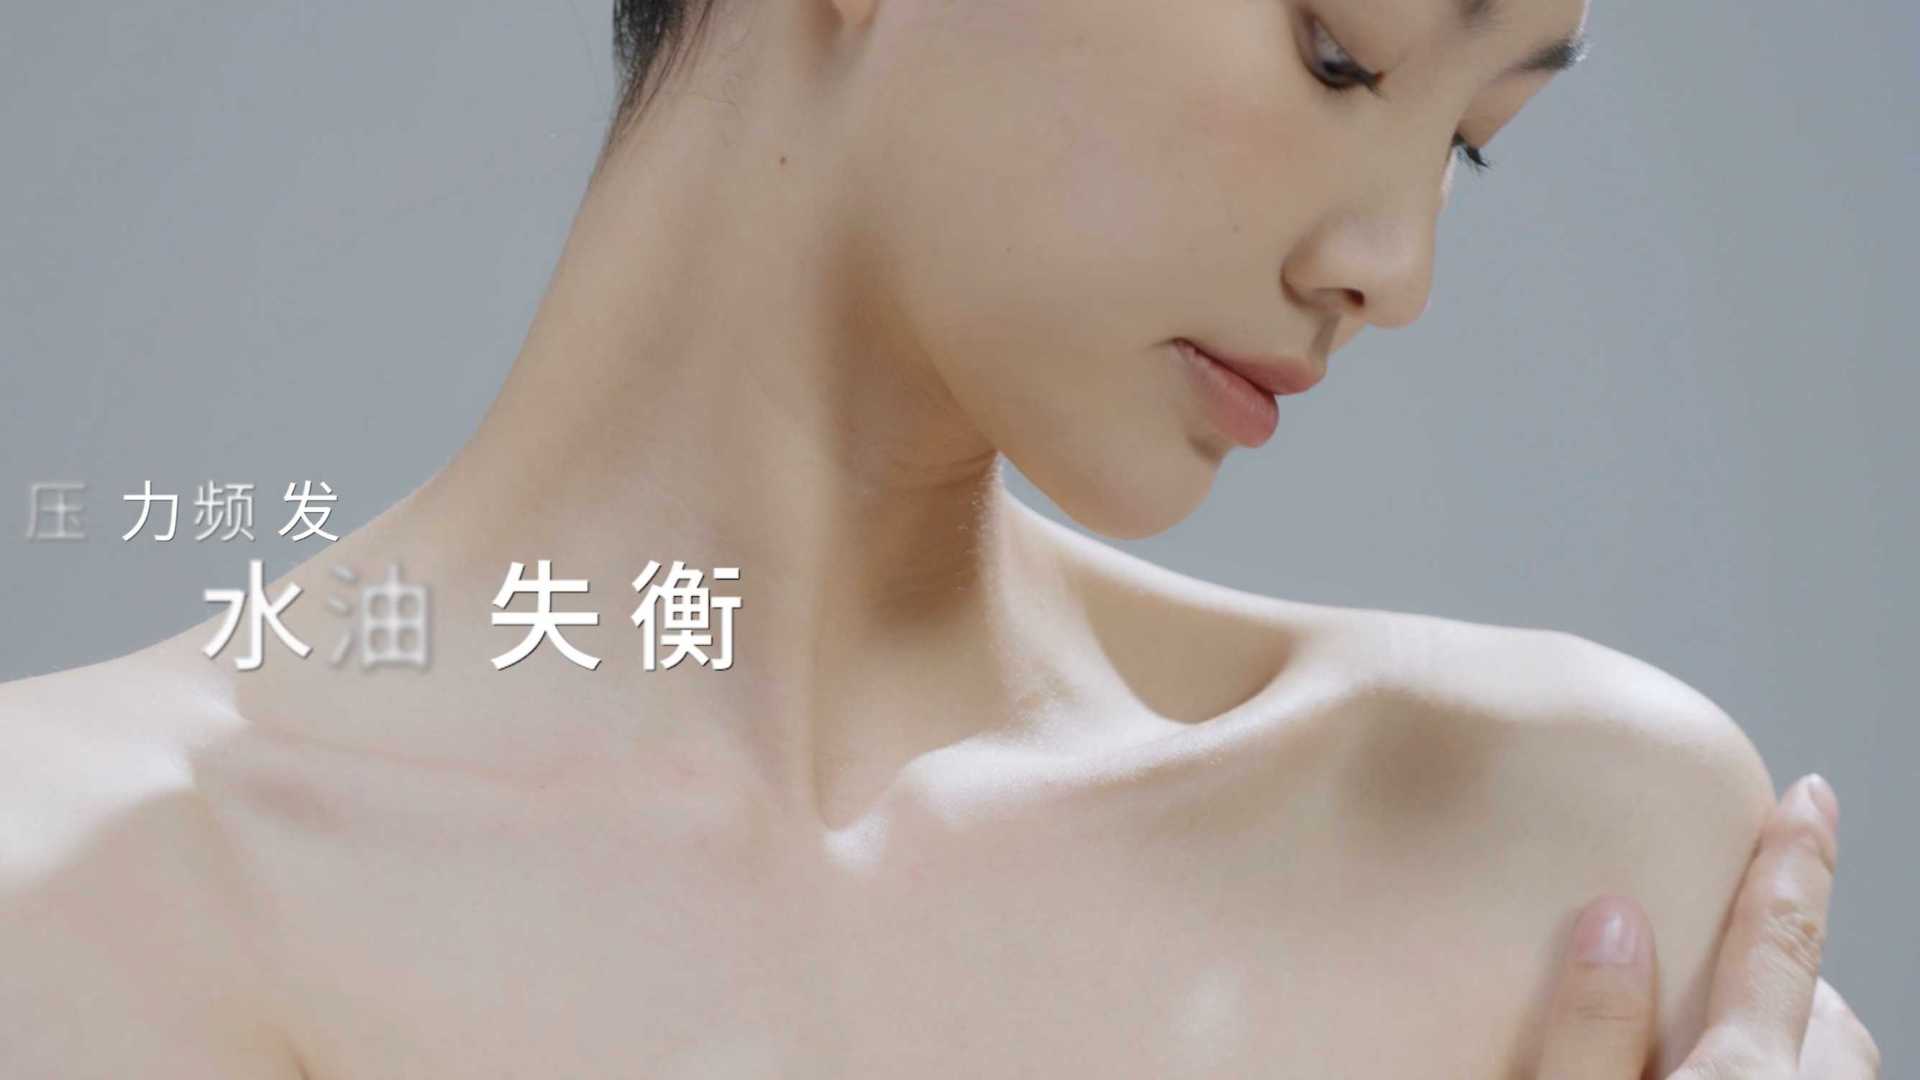 身体记忆 身体乳 护肤品 广告视频拍摄 tvc制作